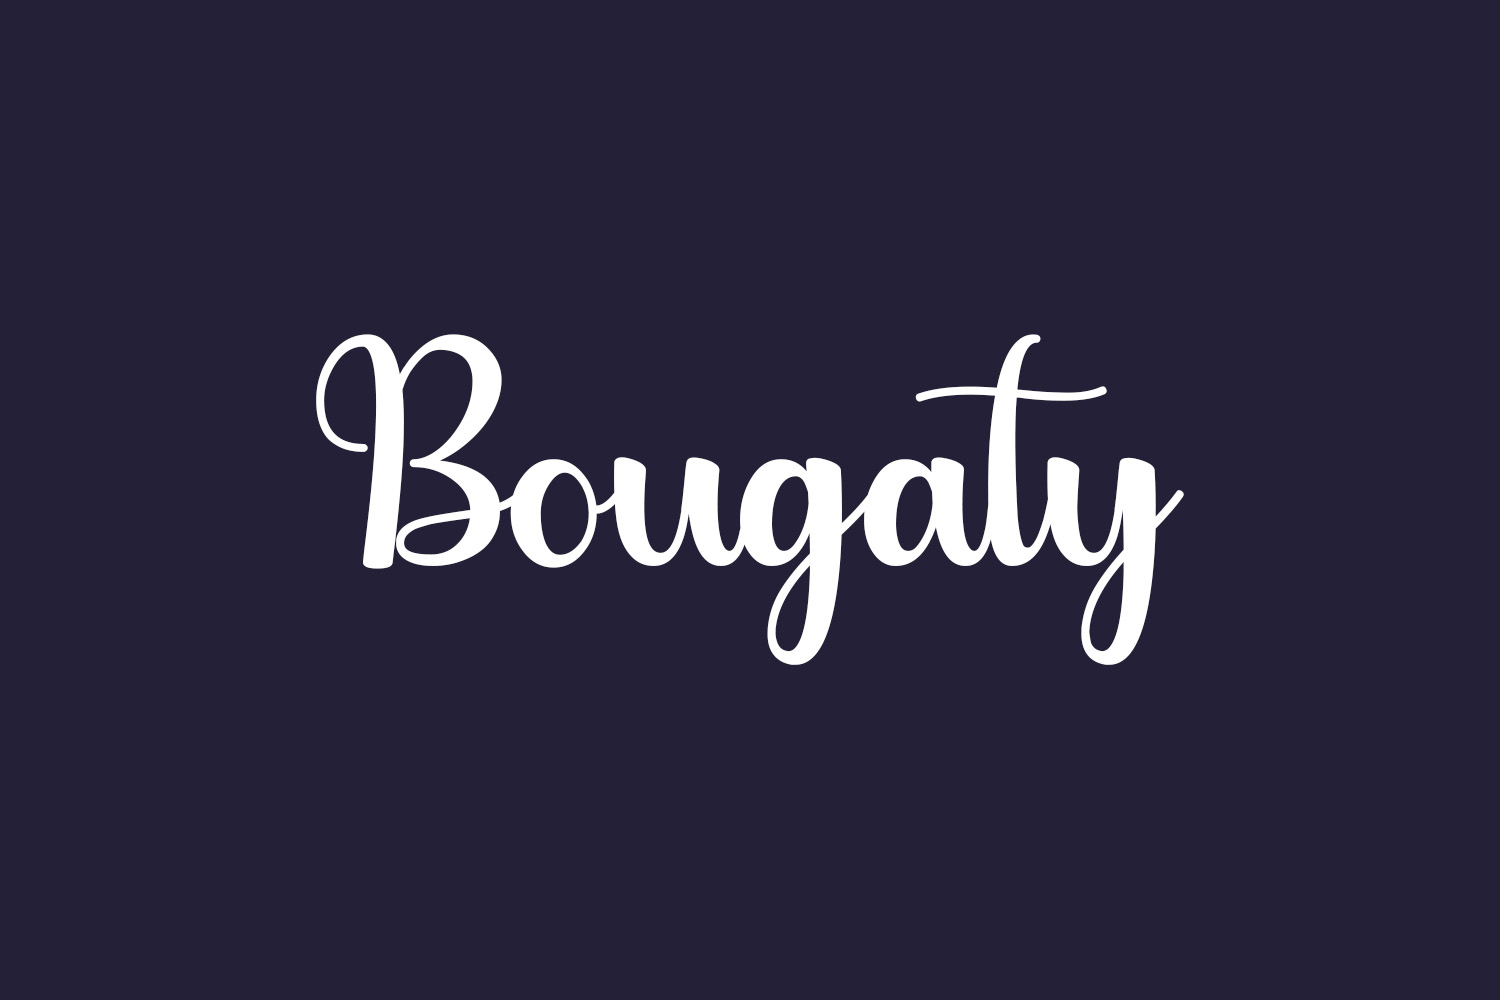 Bougaty Free Font